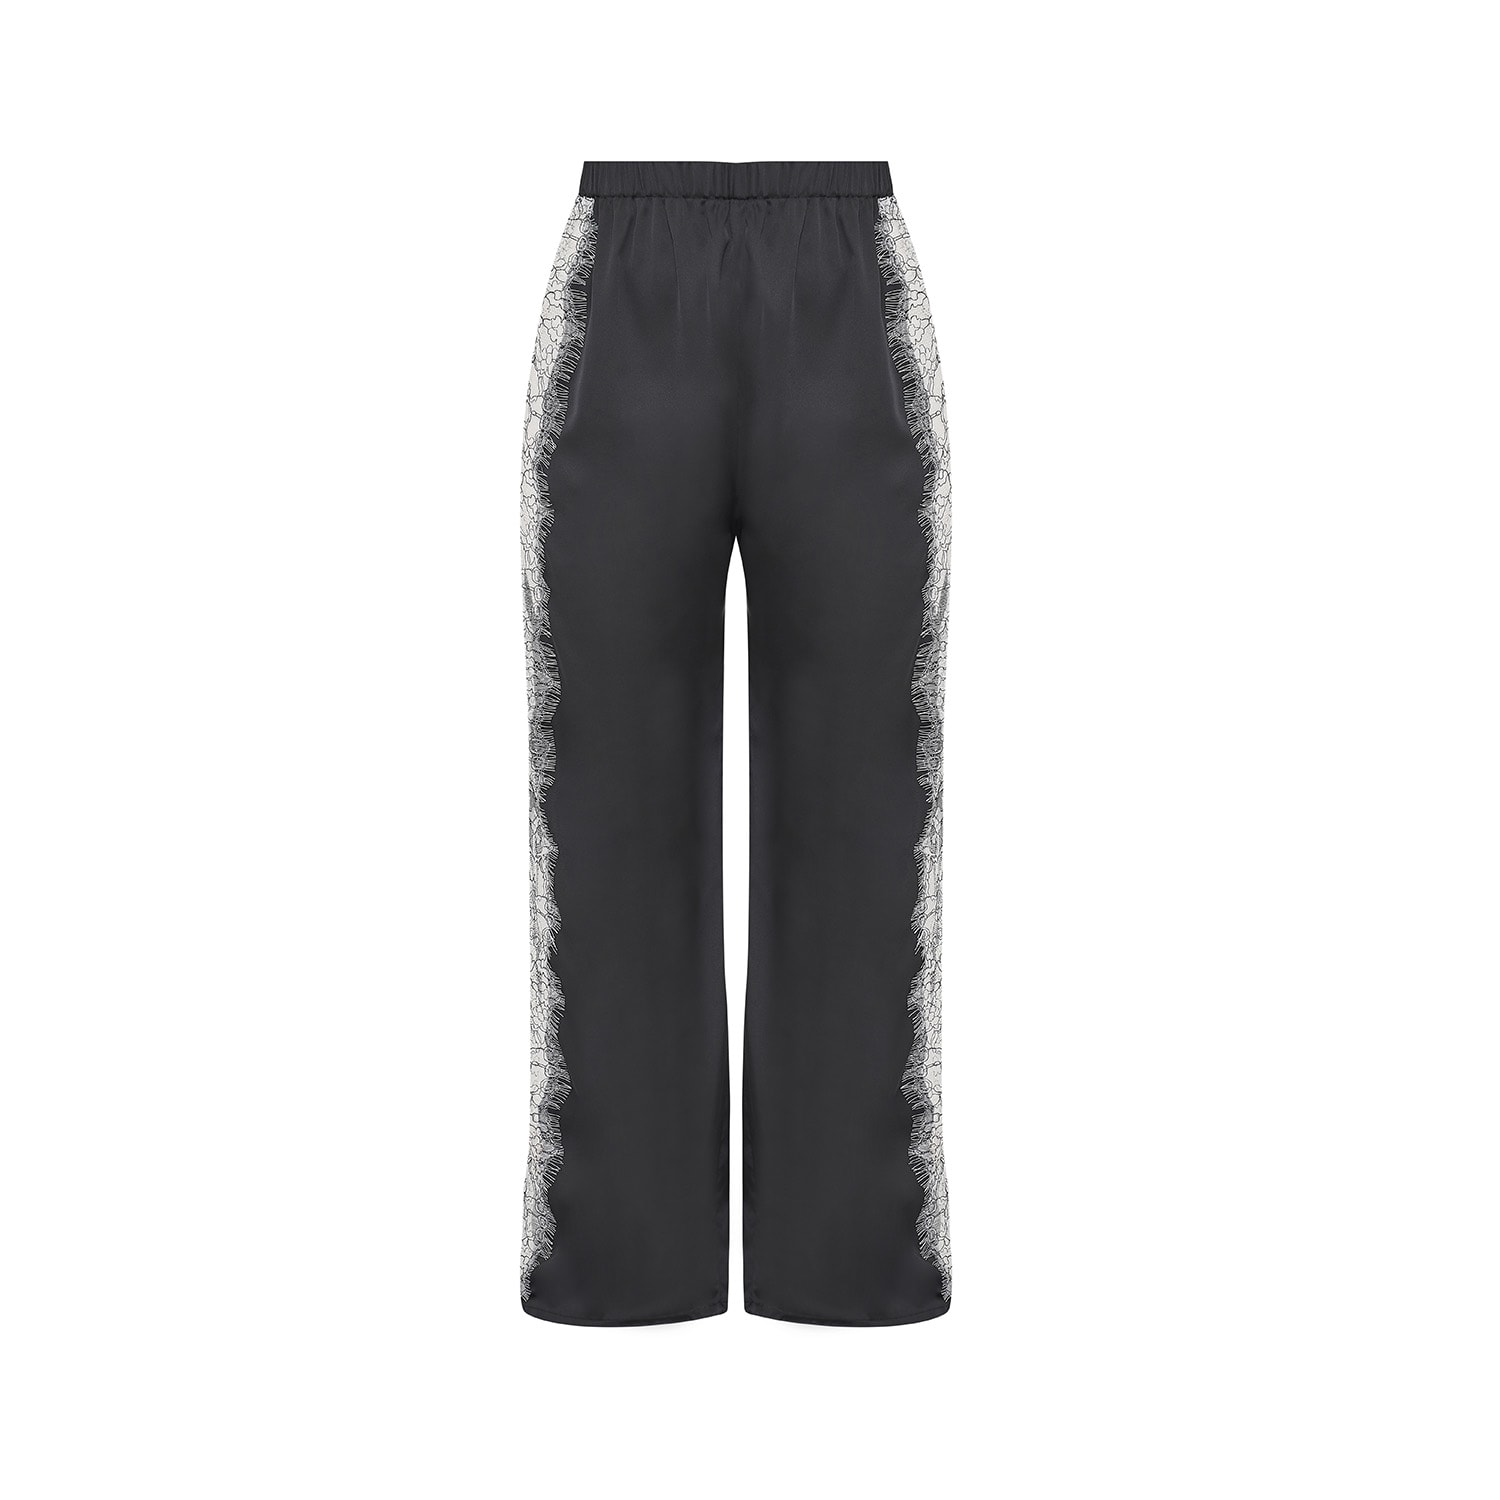 Women’s Lace Detailed Pants - Black & White Lace Medium Avenue 8